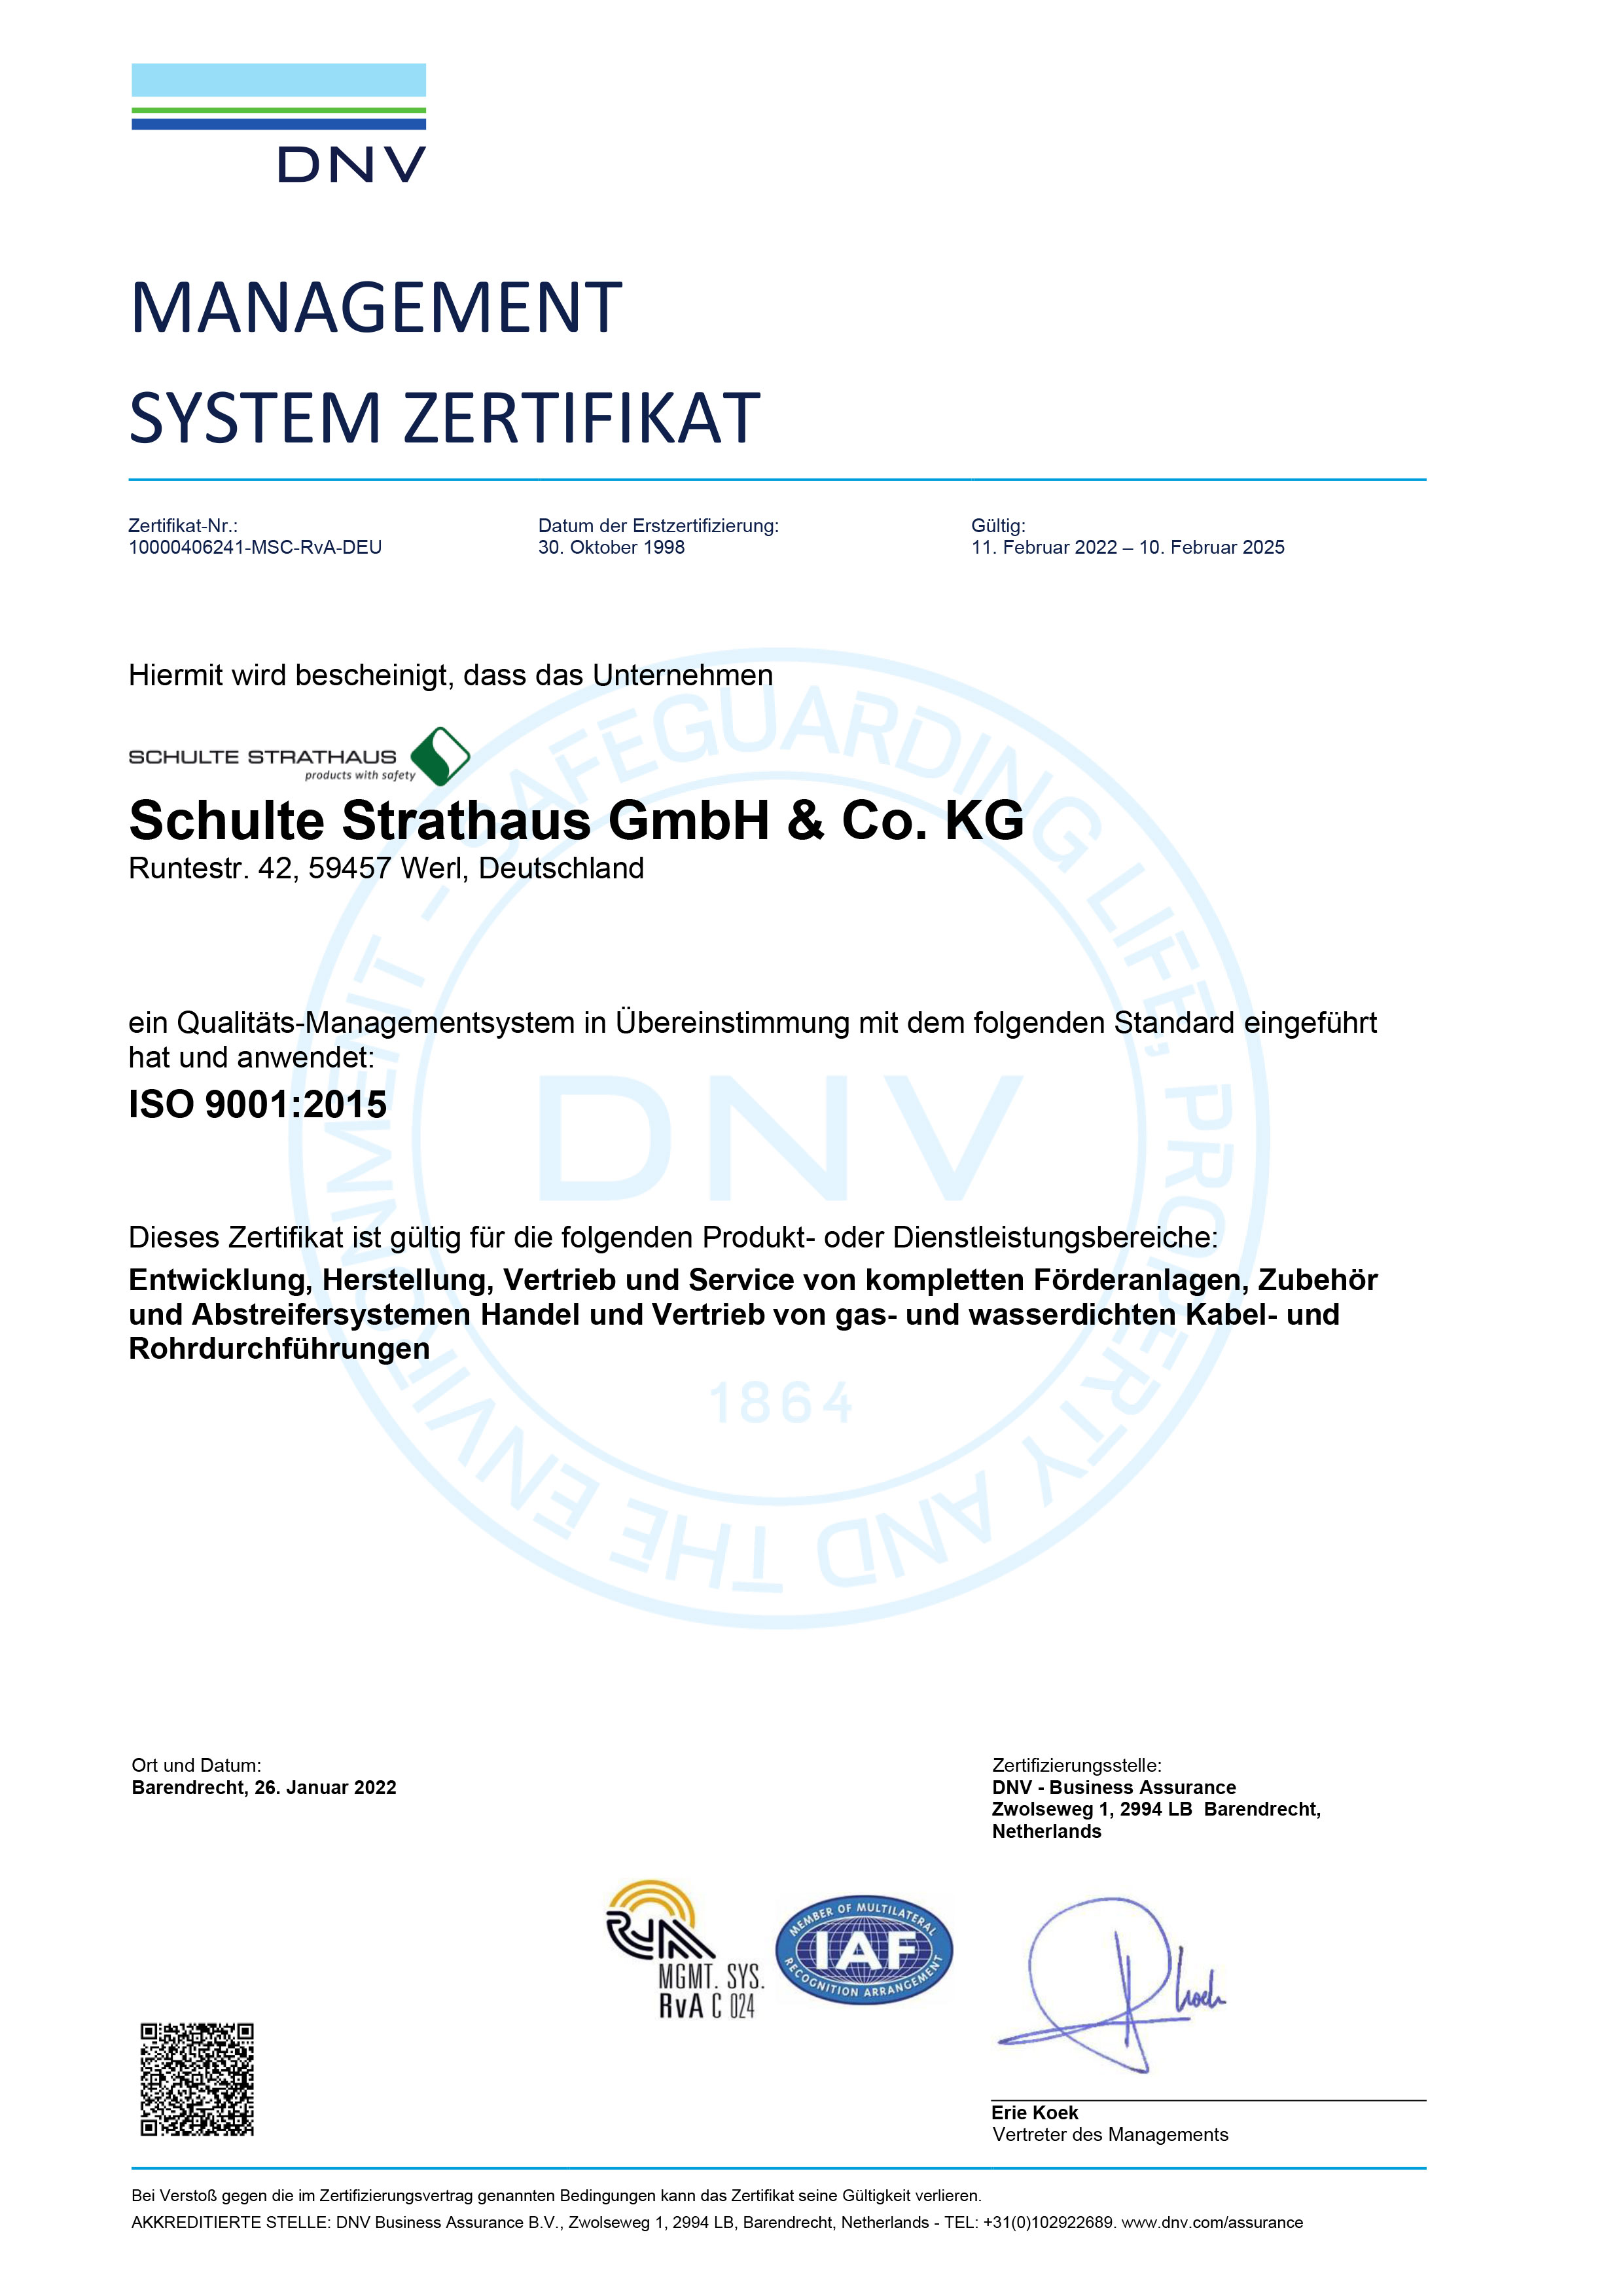 DNV GL Management System Zertifikat ISO 9001:2015 (DE)